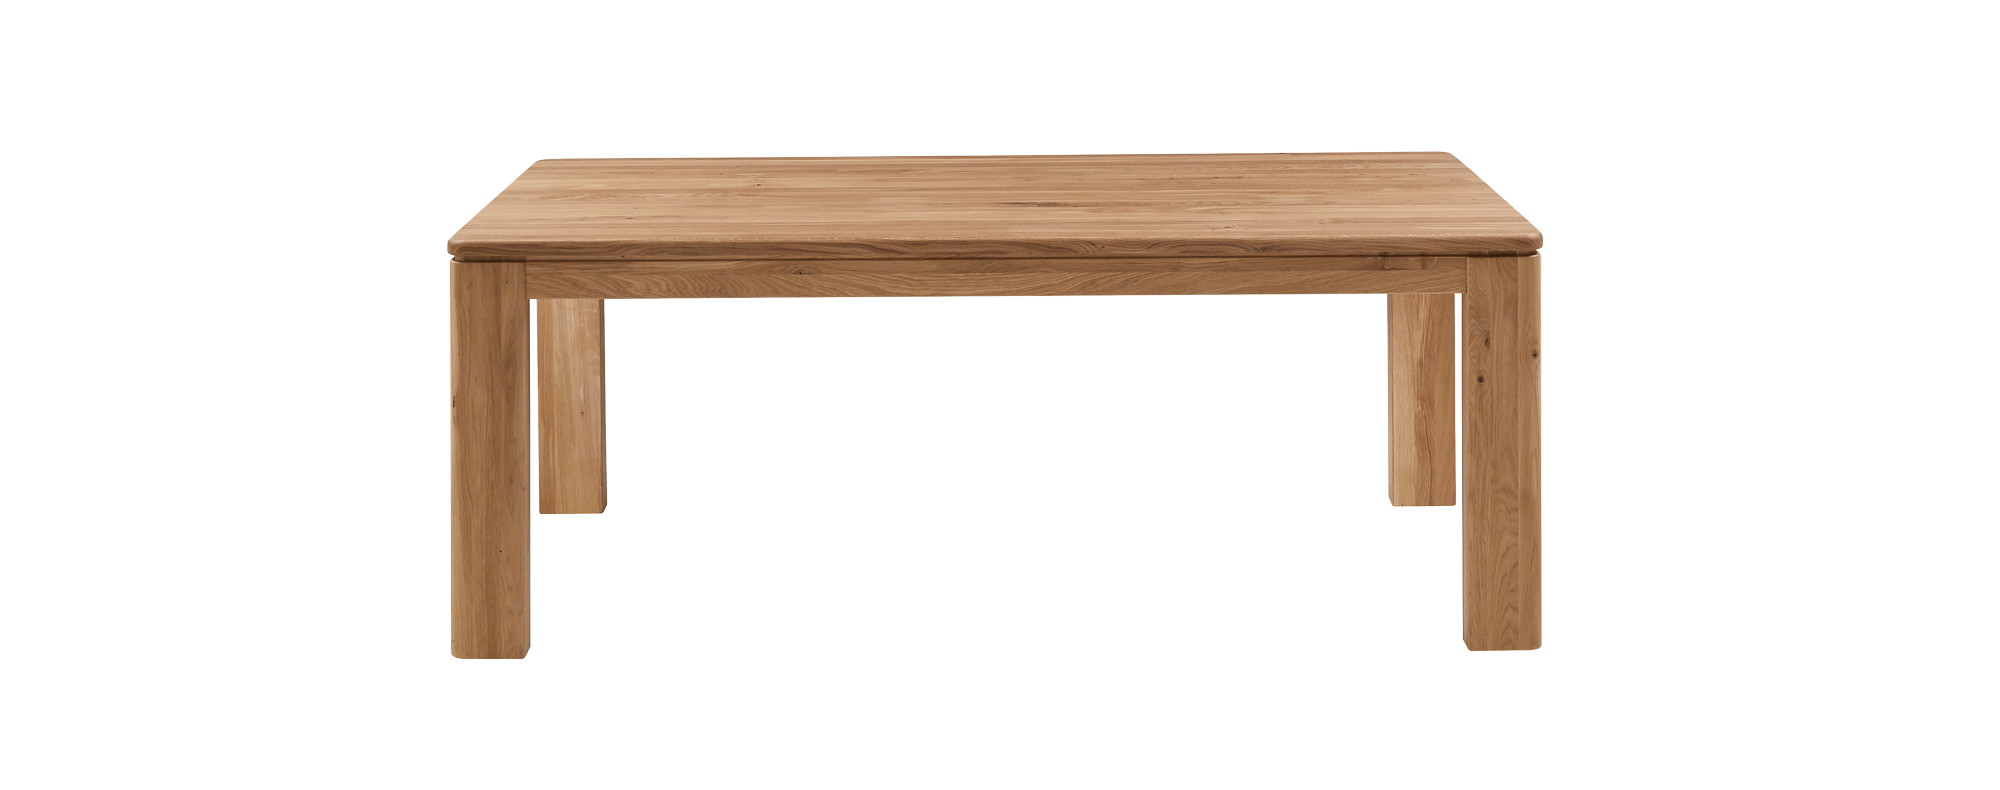 Abbildung Massivholztisch, Modellname TS 3090 soft  